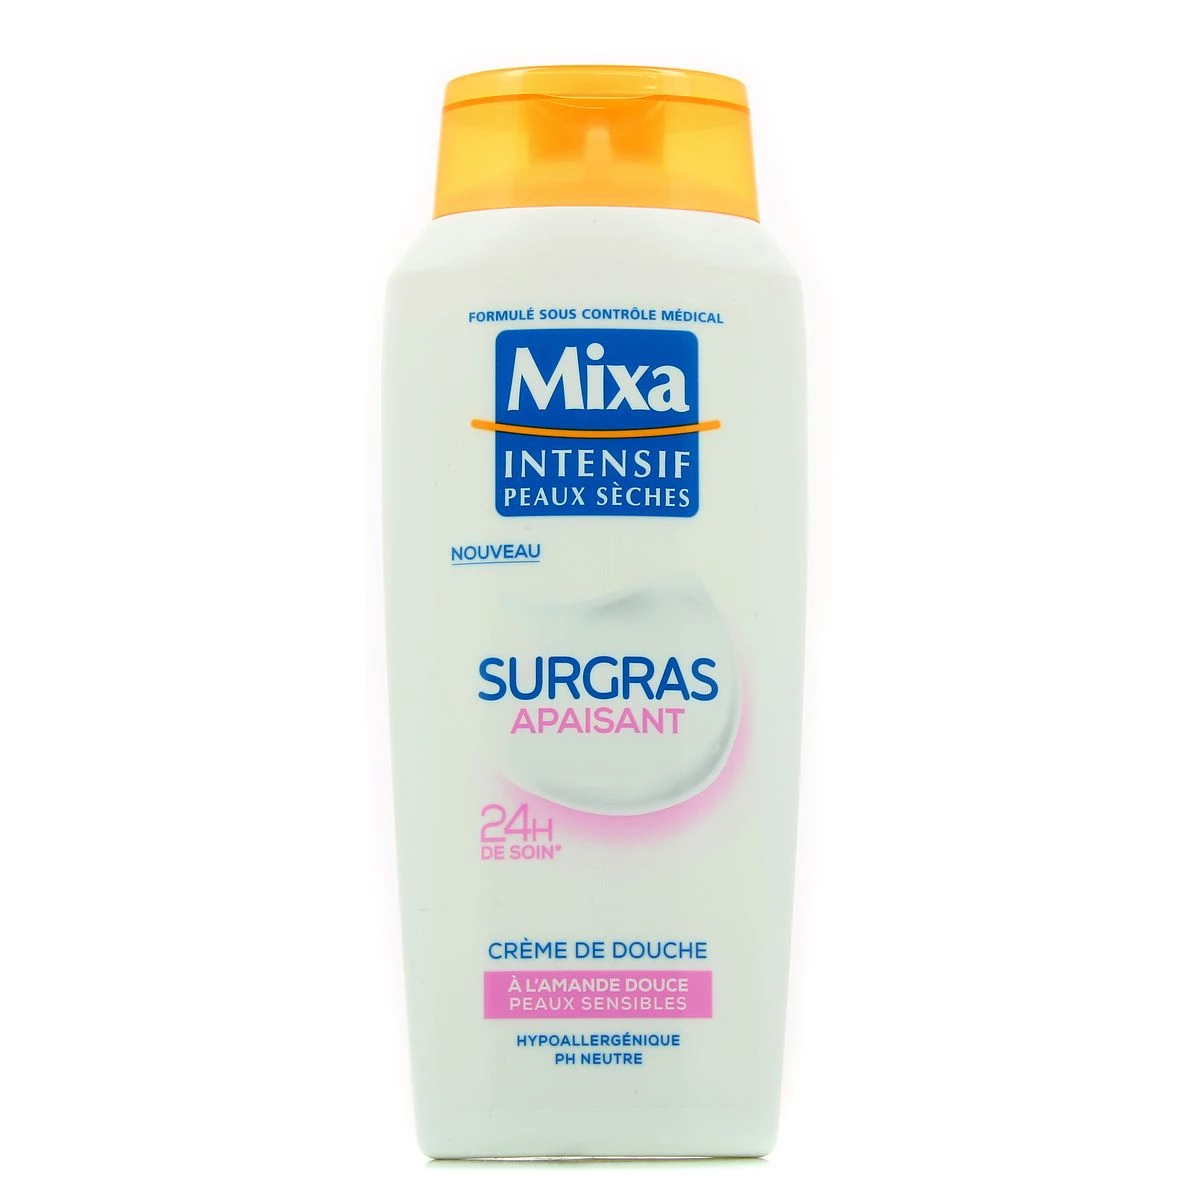 Crème de douche surgras apaisant intense à l'amande douce peaux sensibles 250ml - MIXA